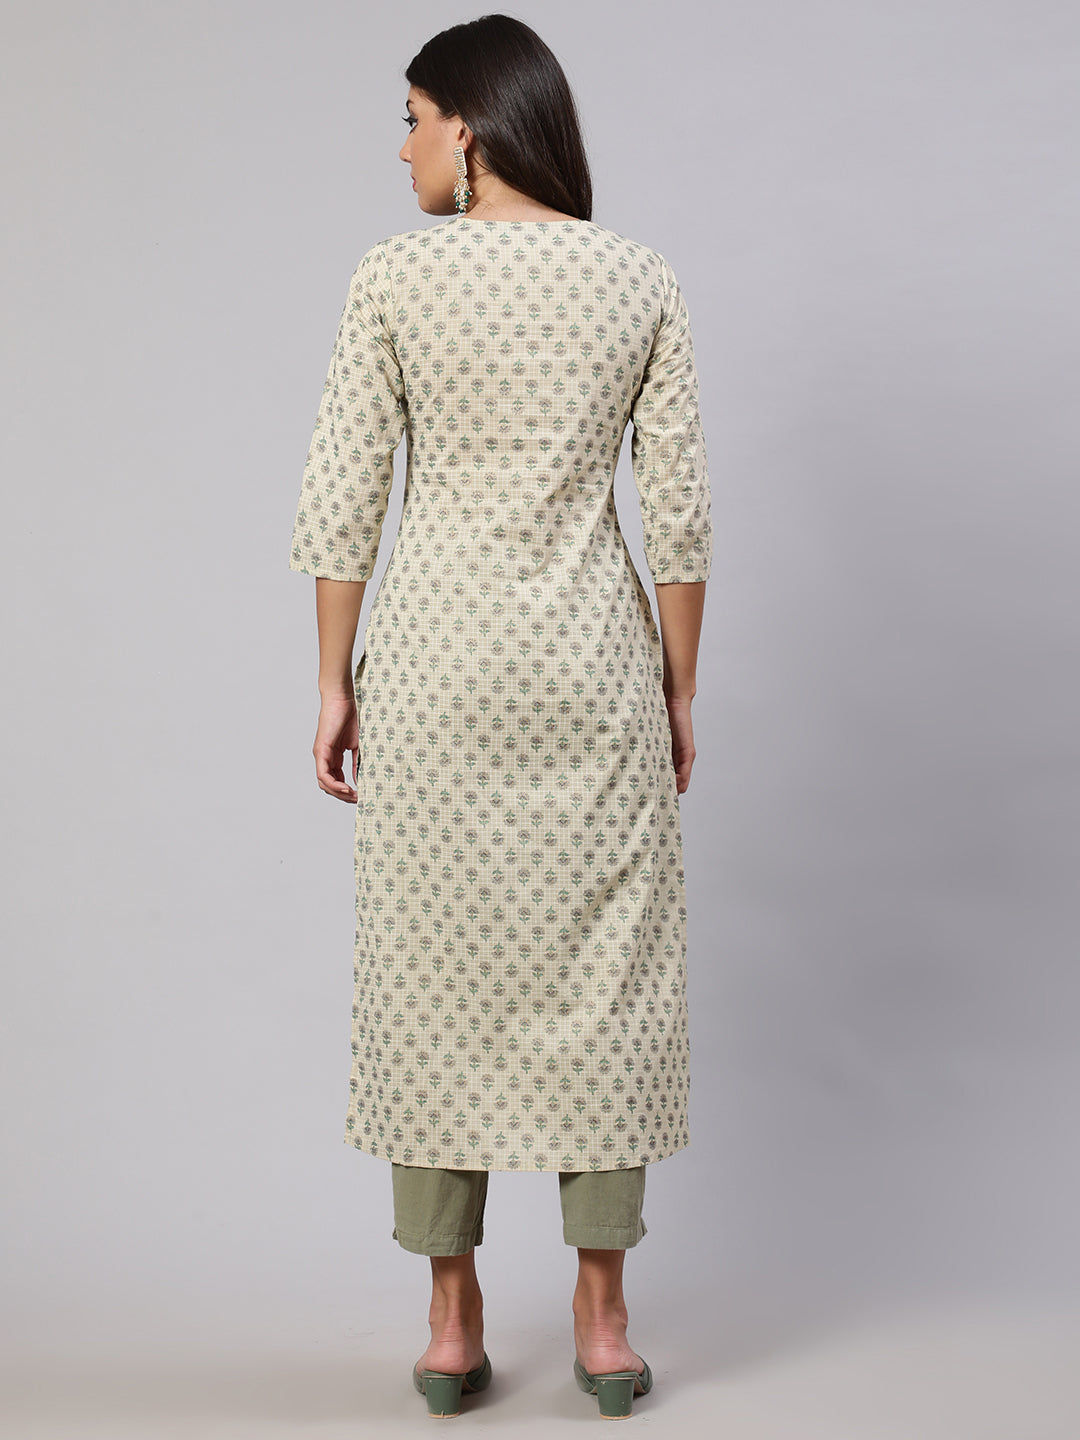 Women's Cream Printed Straight Kurta With Three Quarter Sleeves - Nayo Clothing